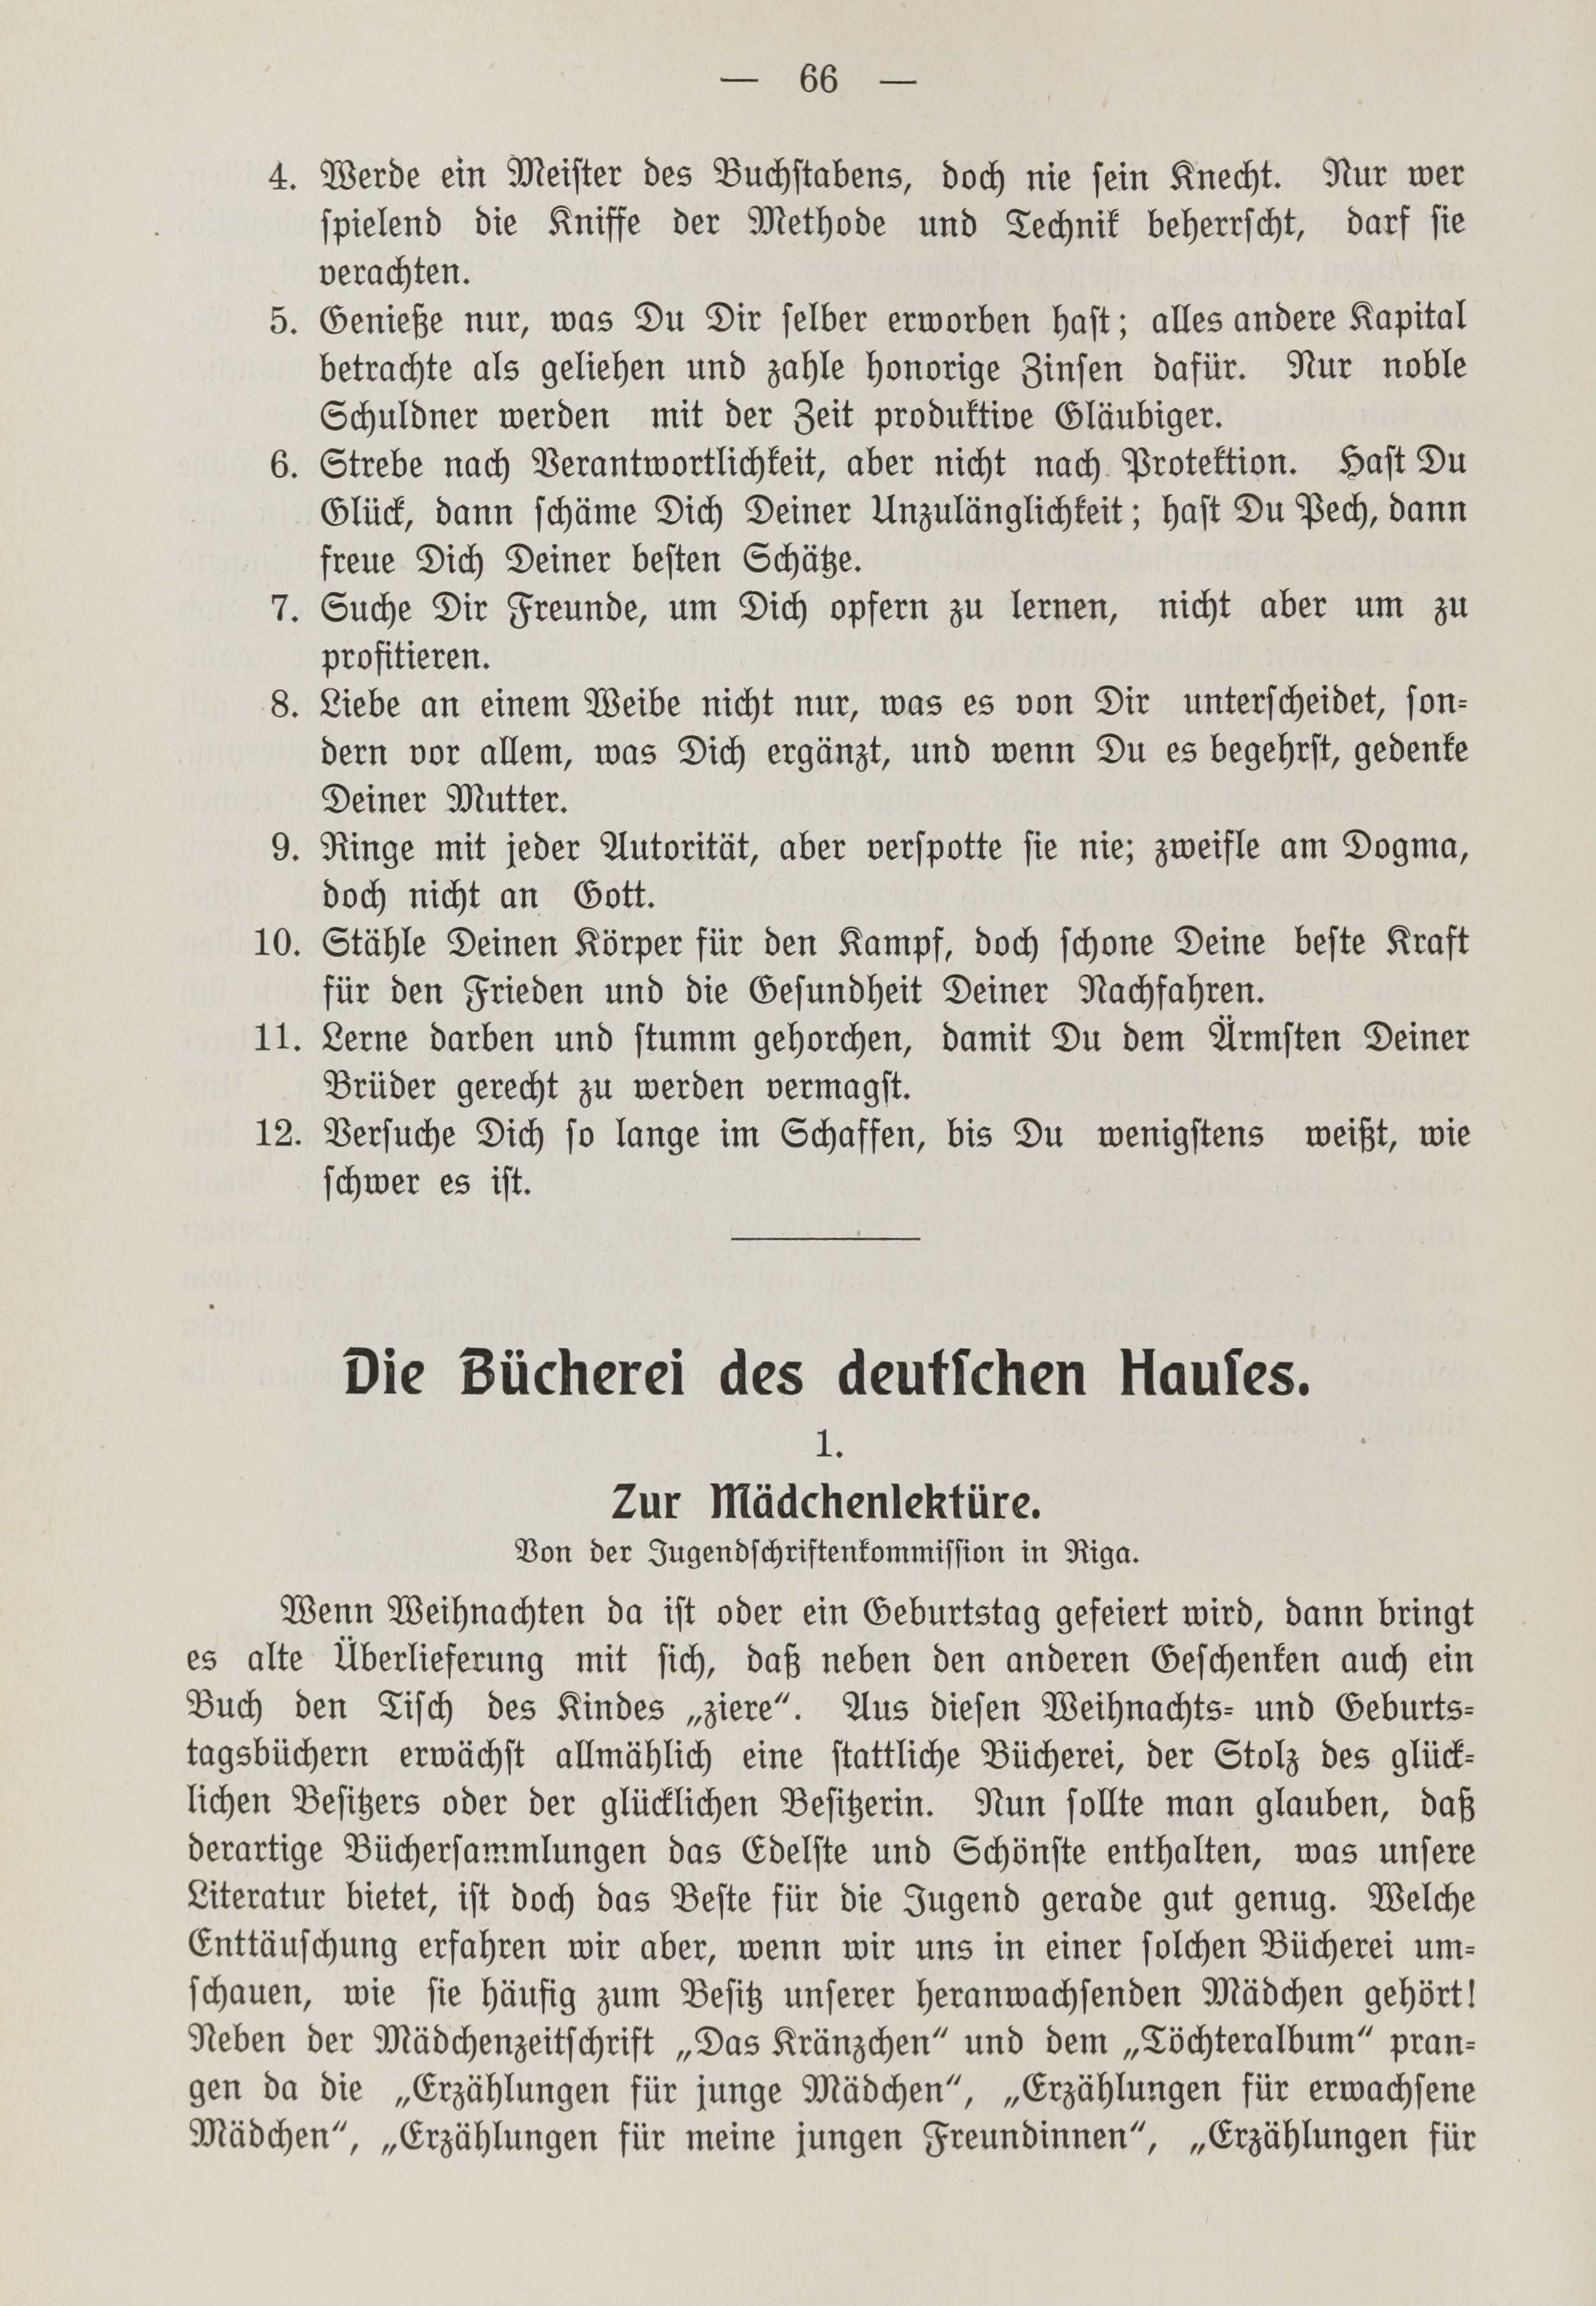 Deutsche Monatsschrift für Russland [1] (1912) | 73. (66) Haupttext